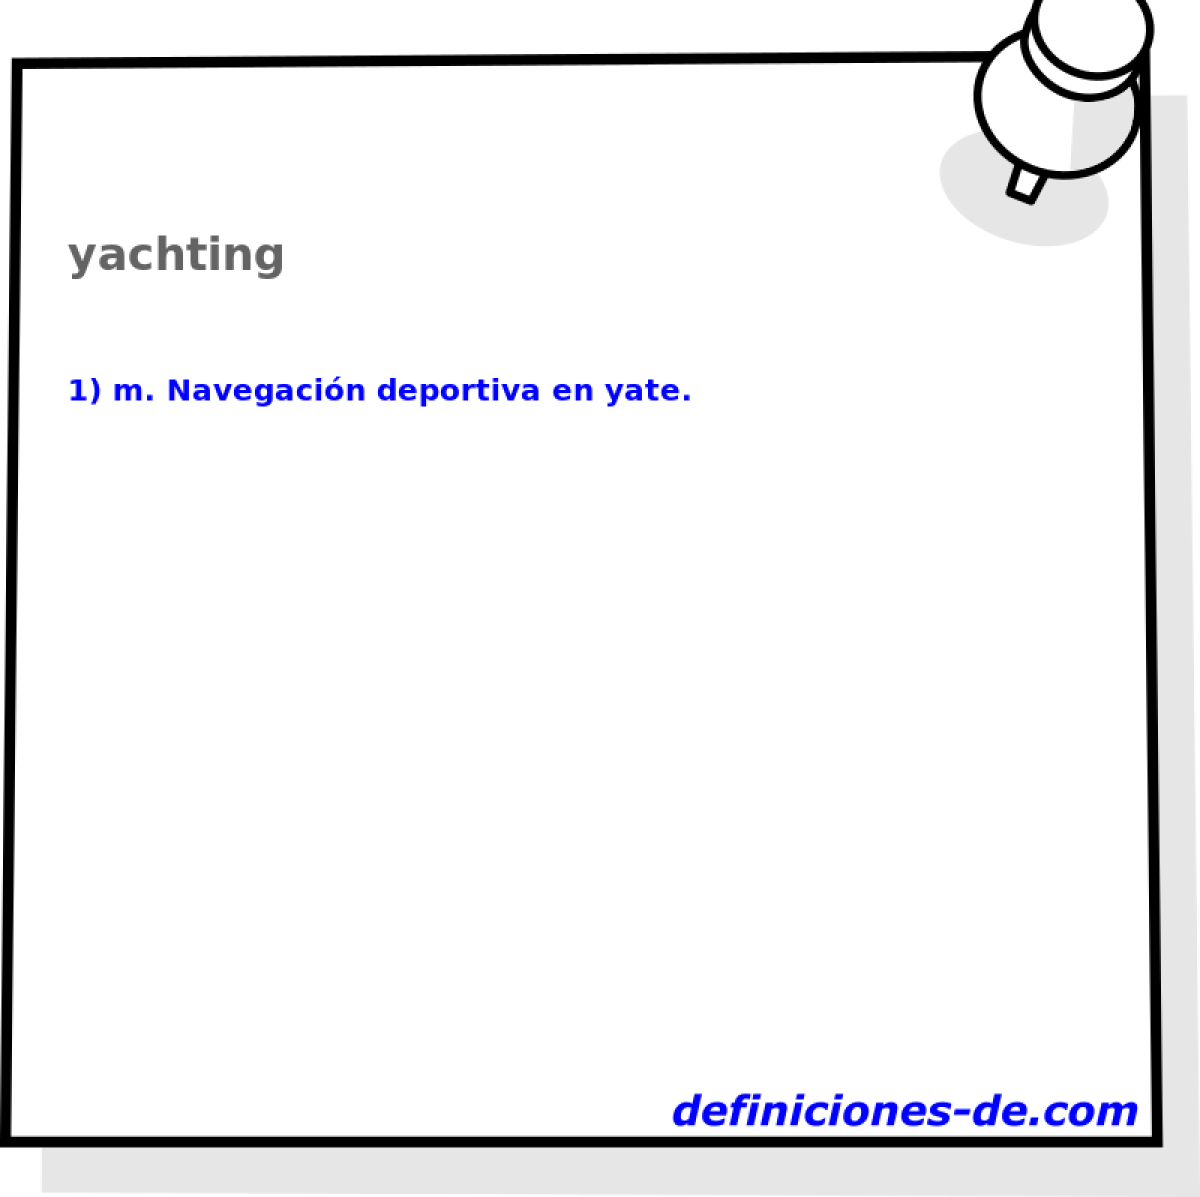 yachting 